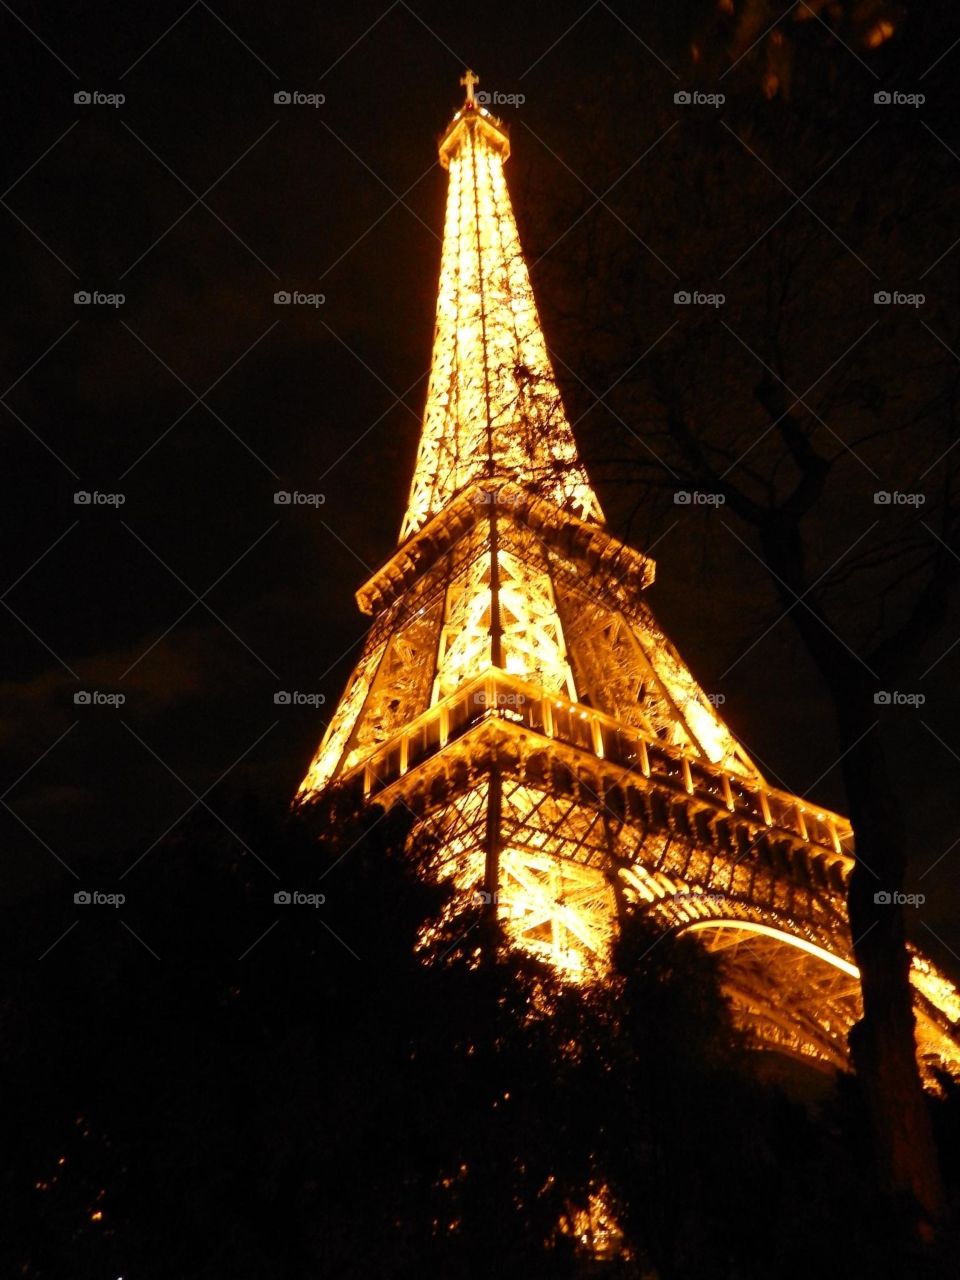 Eiffel Tower foto taken at night 